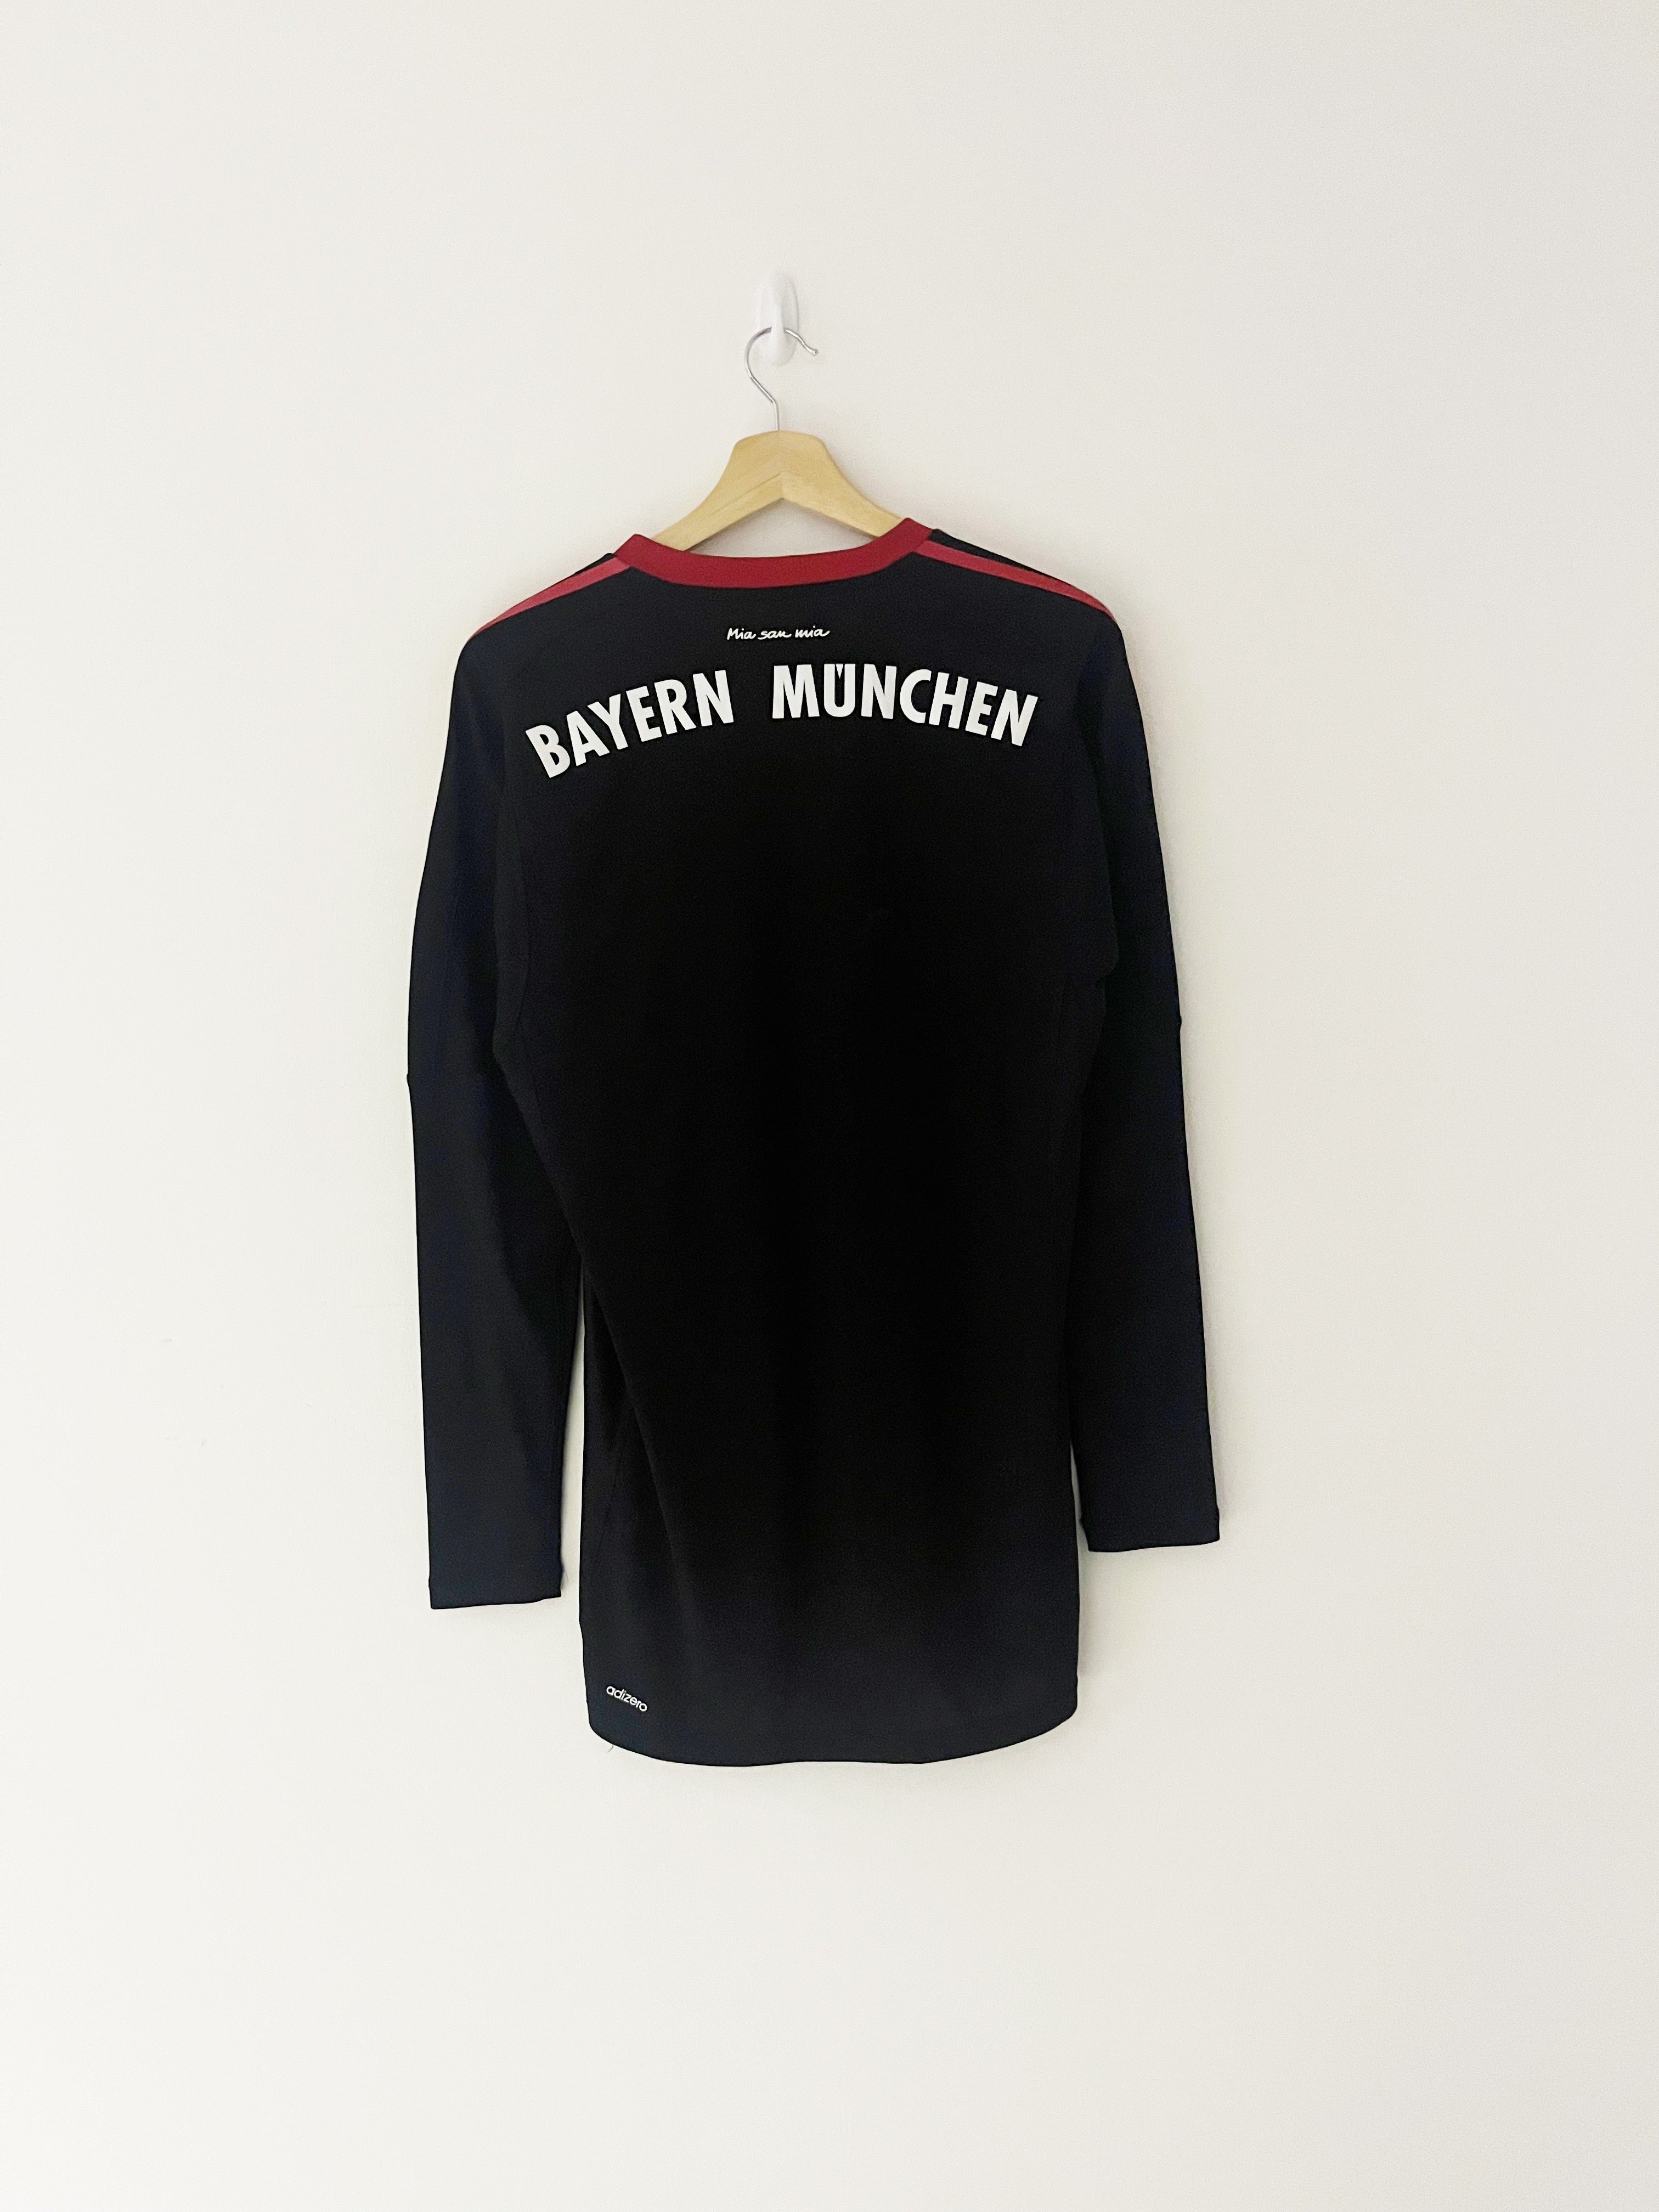 2017/18 Bayern Munich GK Shirt (S) 9/10